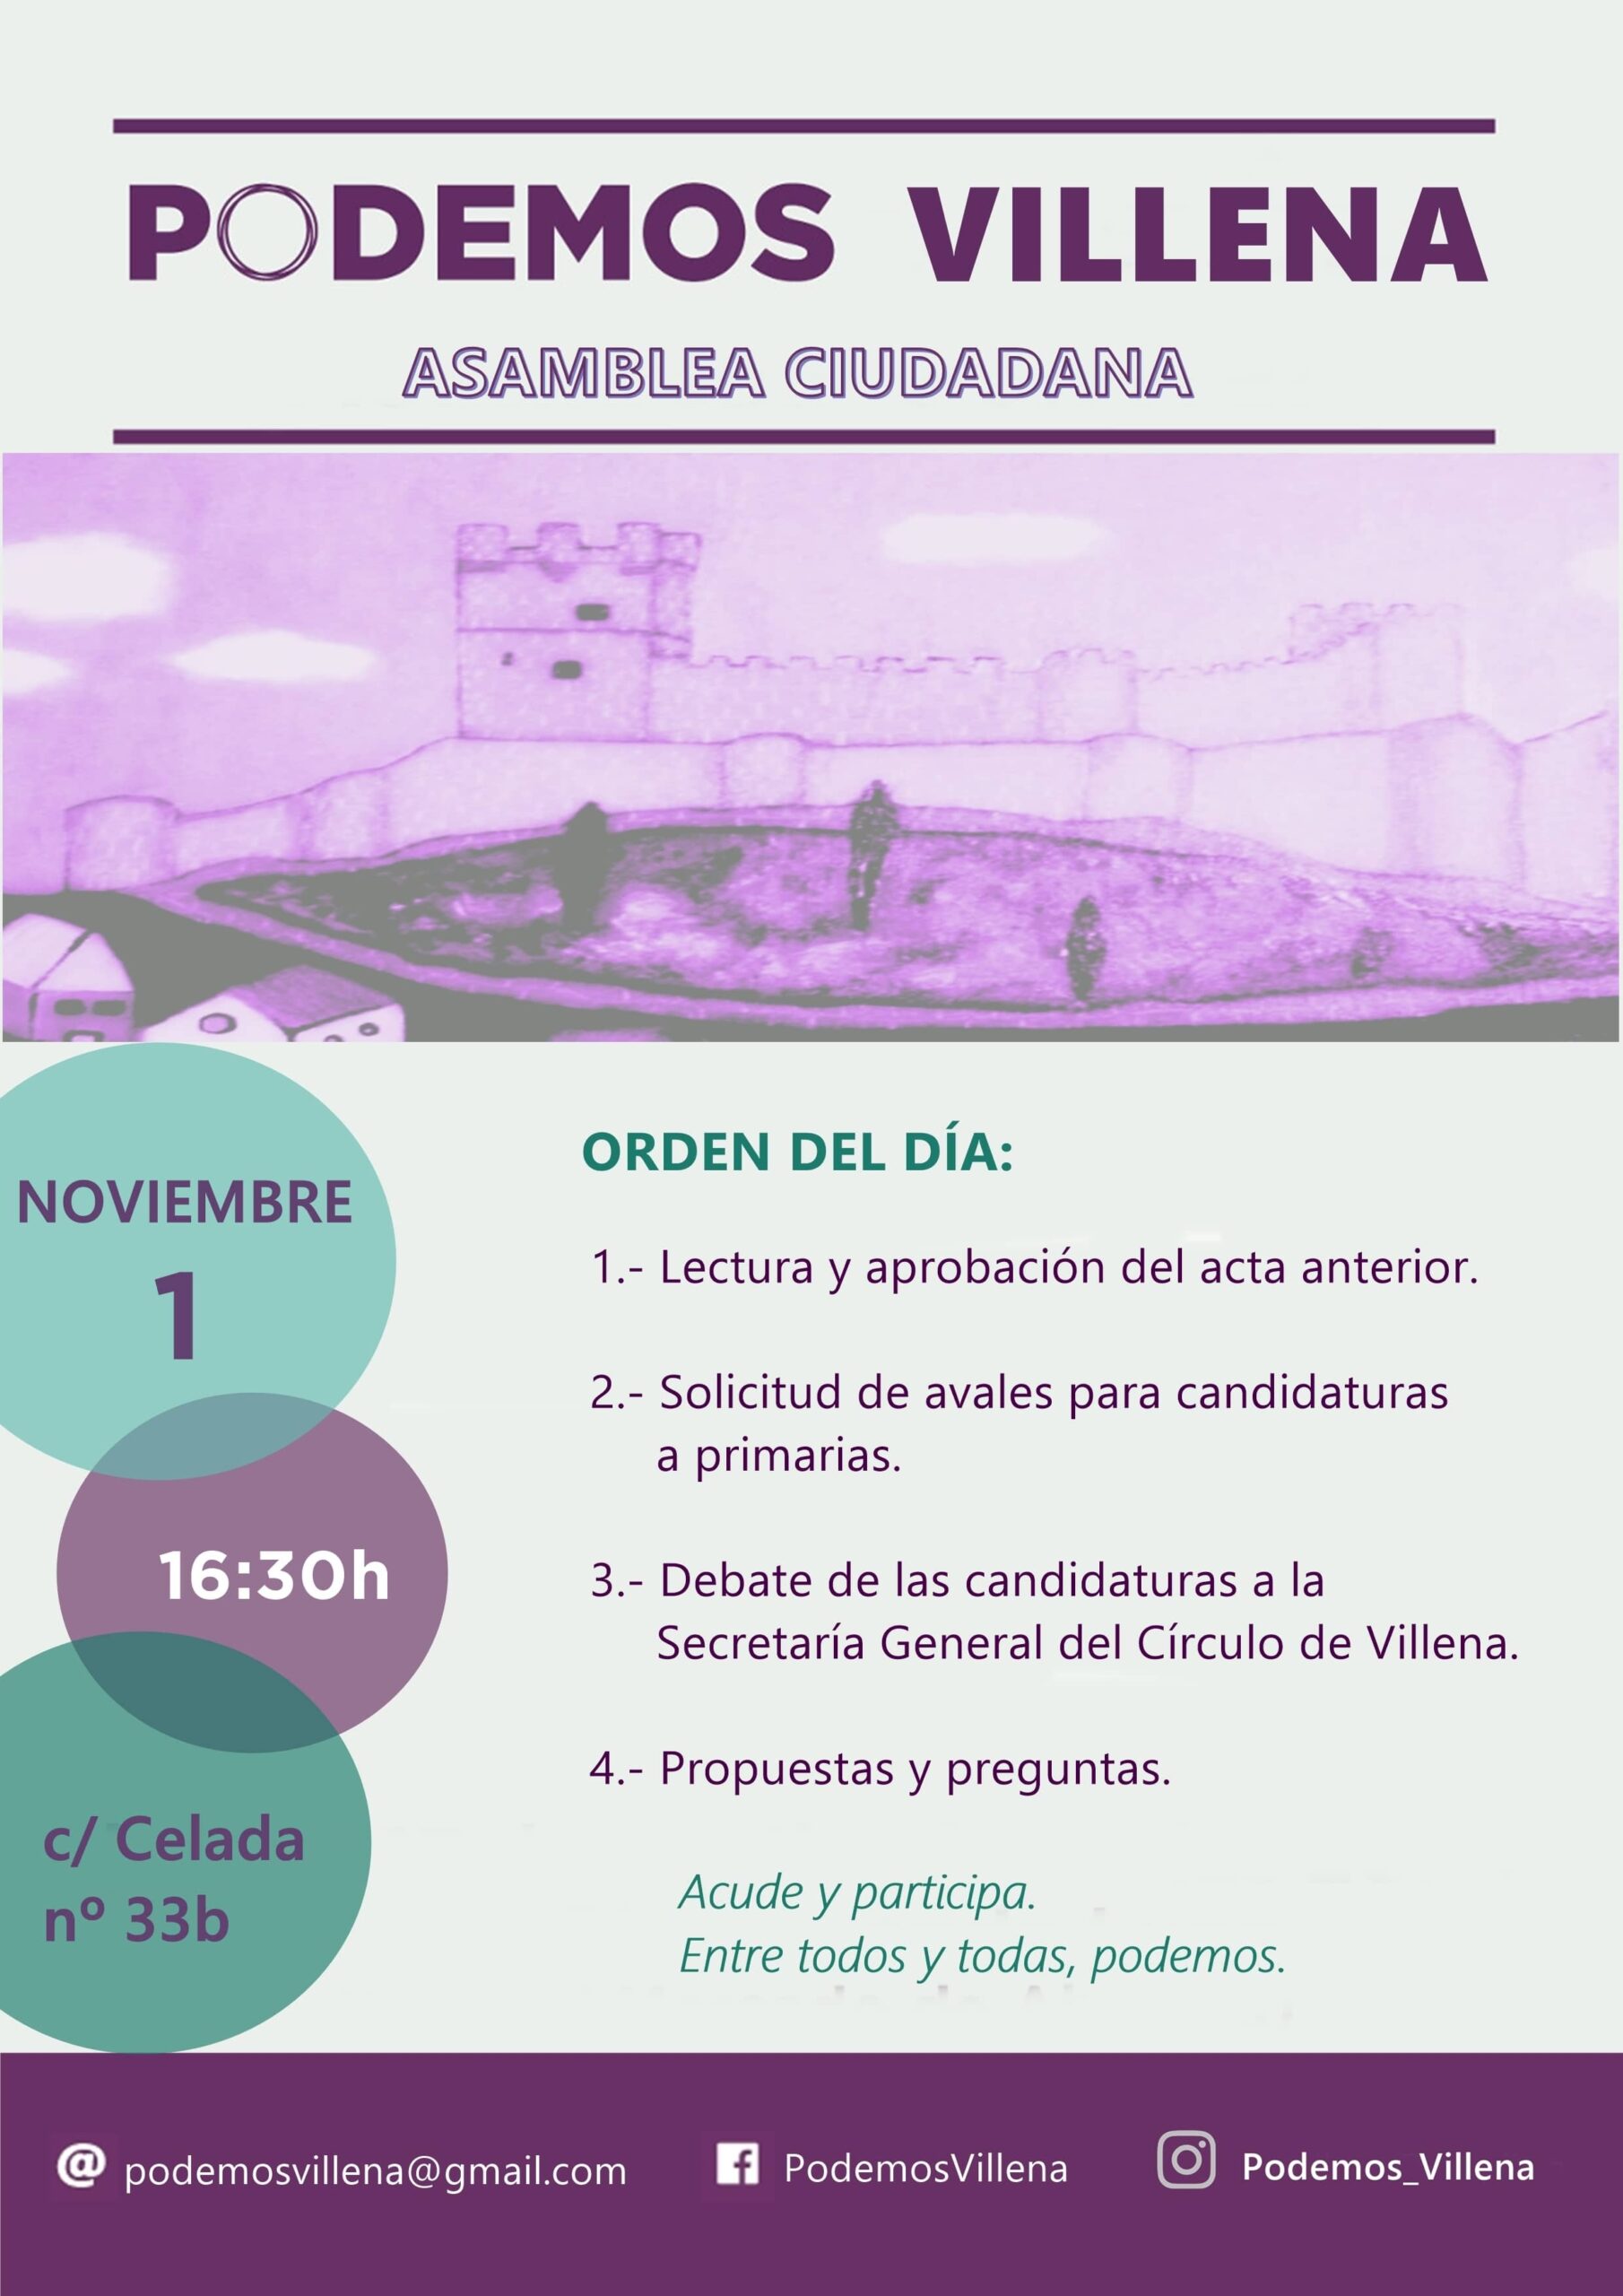 Convocatoria de Asamblea del Círculo Podemos para debatir sobre las candidaturas a la Secretaria General